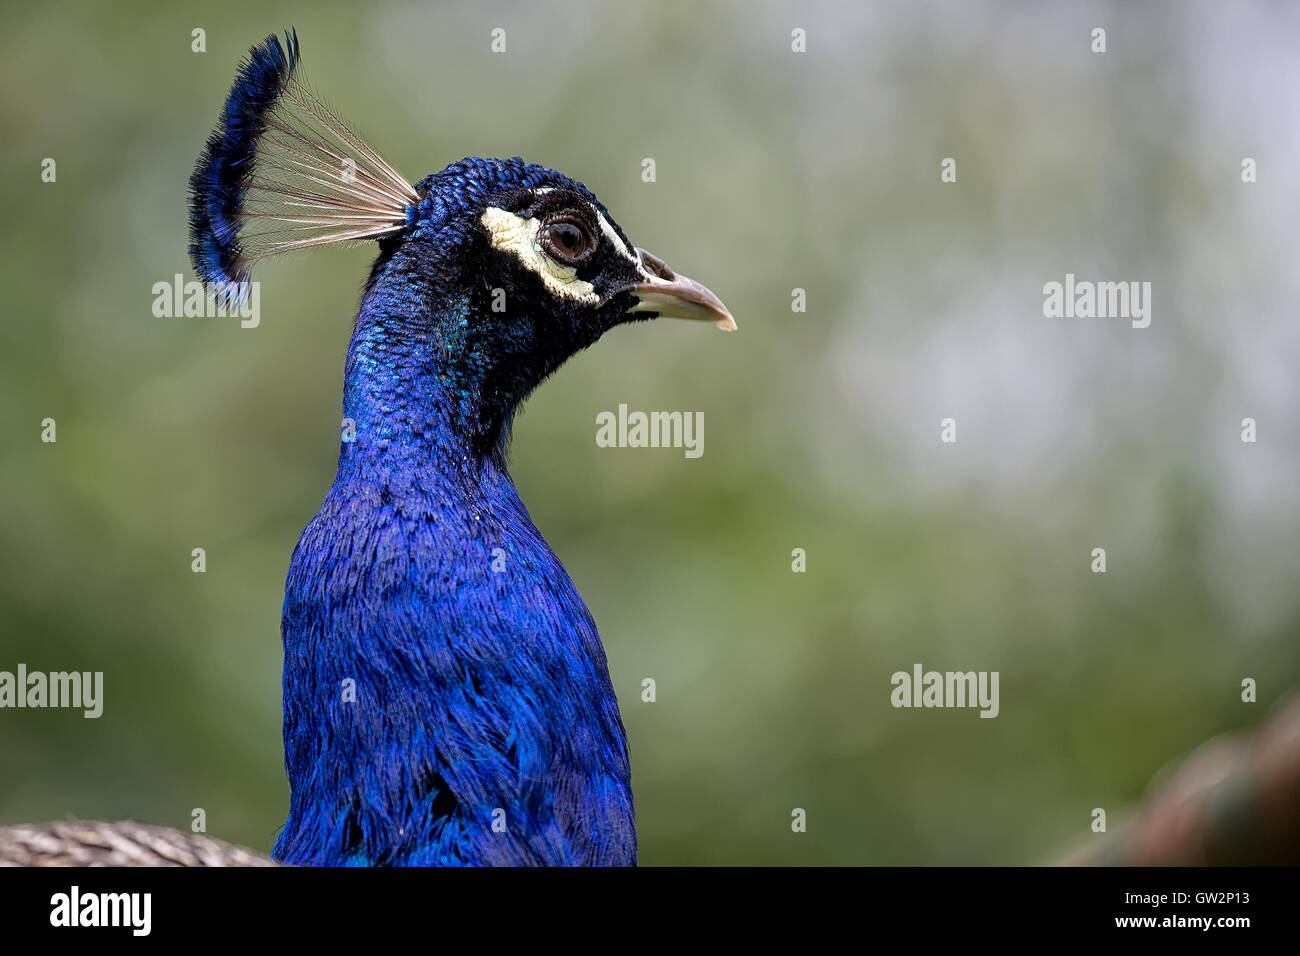 Peacock dans la nature, un portrait Banque D'Images